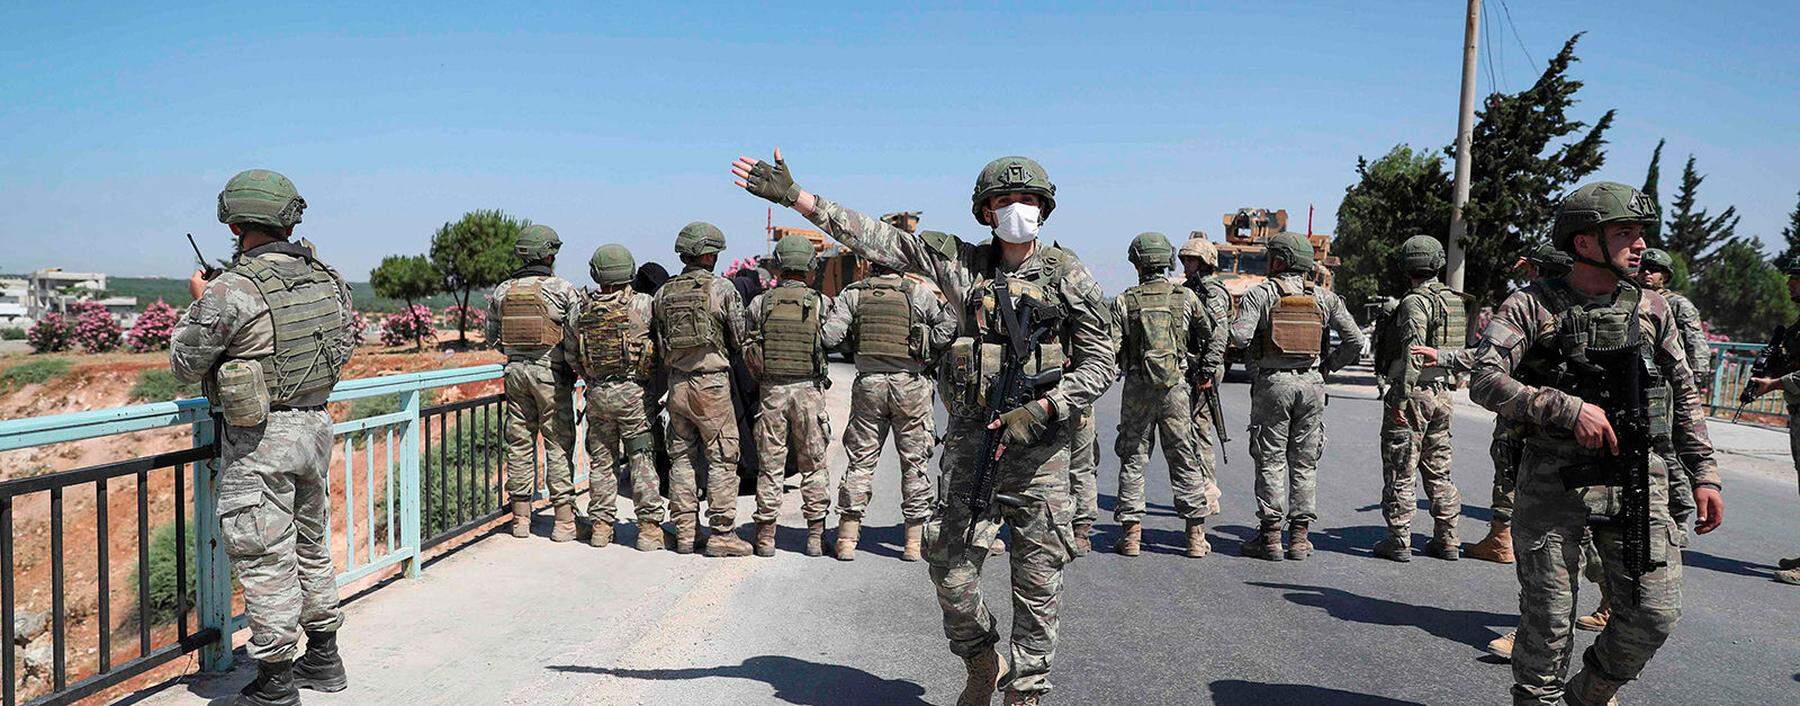 Türkische Soldaten auf einer Brücke der wichtigen syrischen Straße M4.